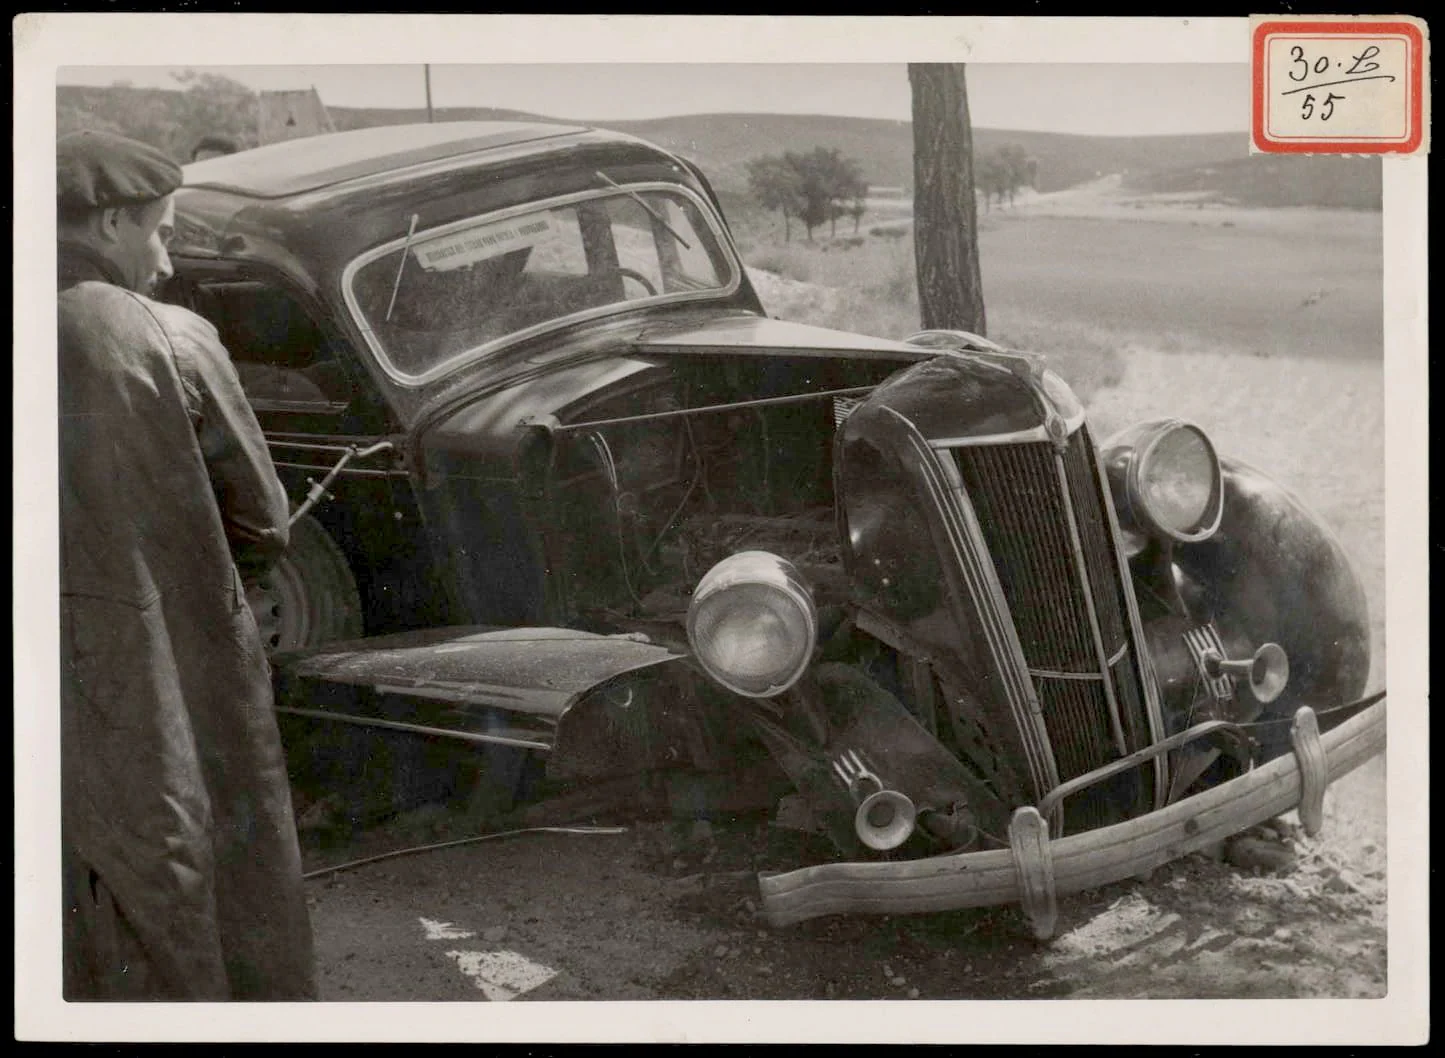 Imagen del vehículo del periodista de ABC tras sufrir un accidente de tráfico.